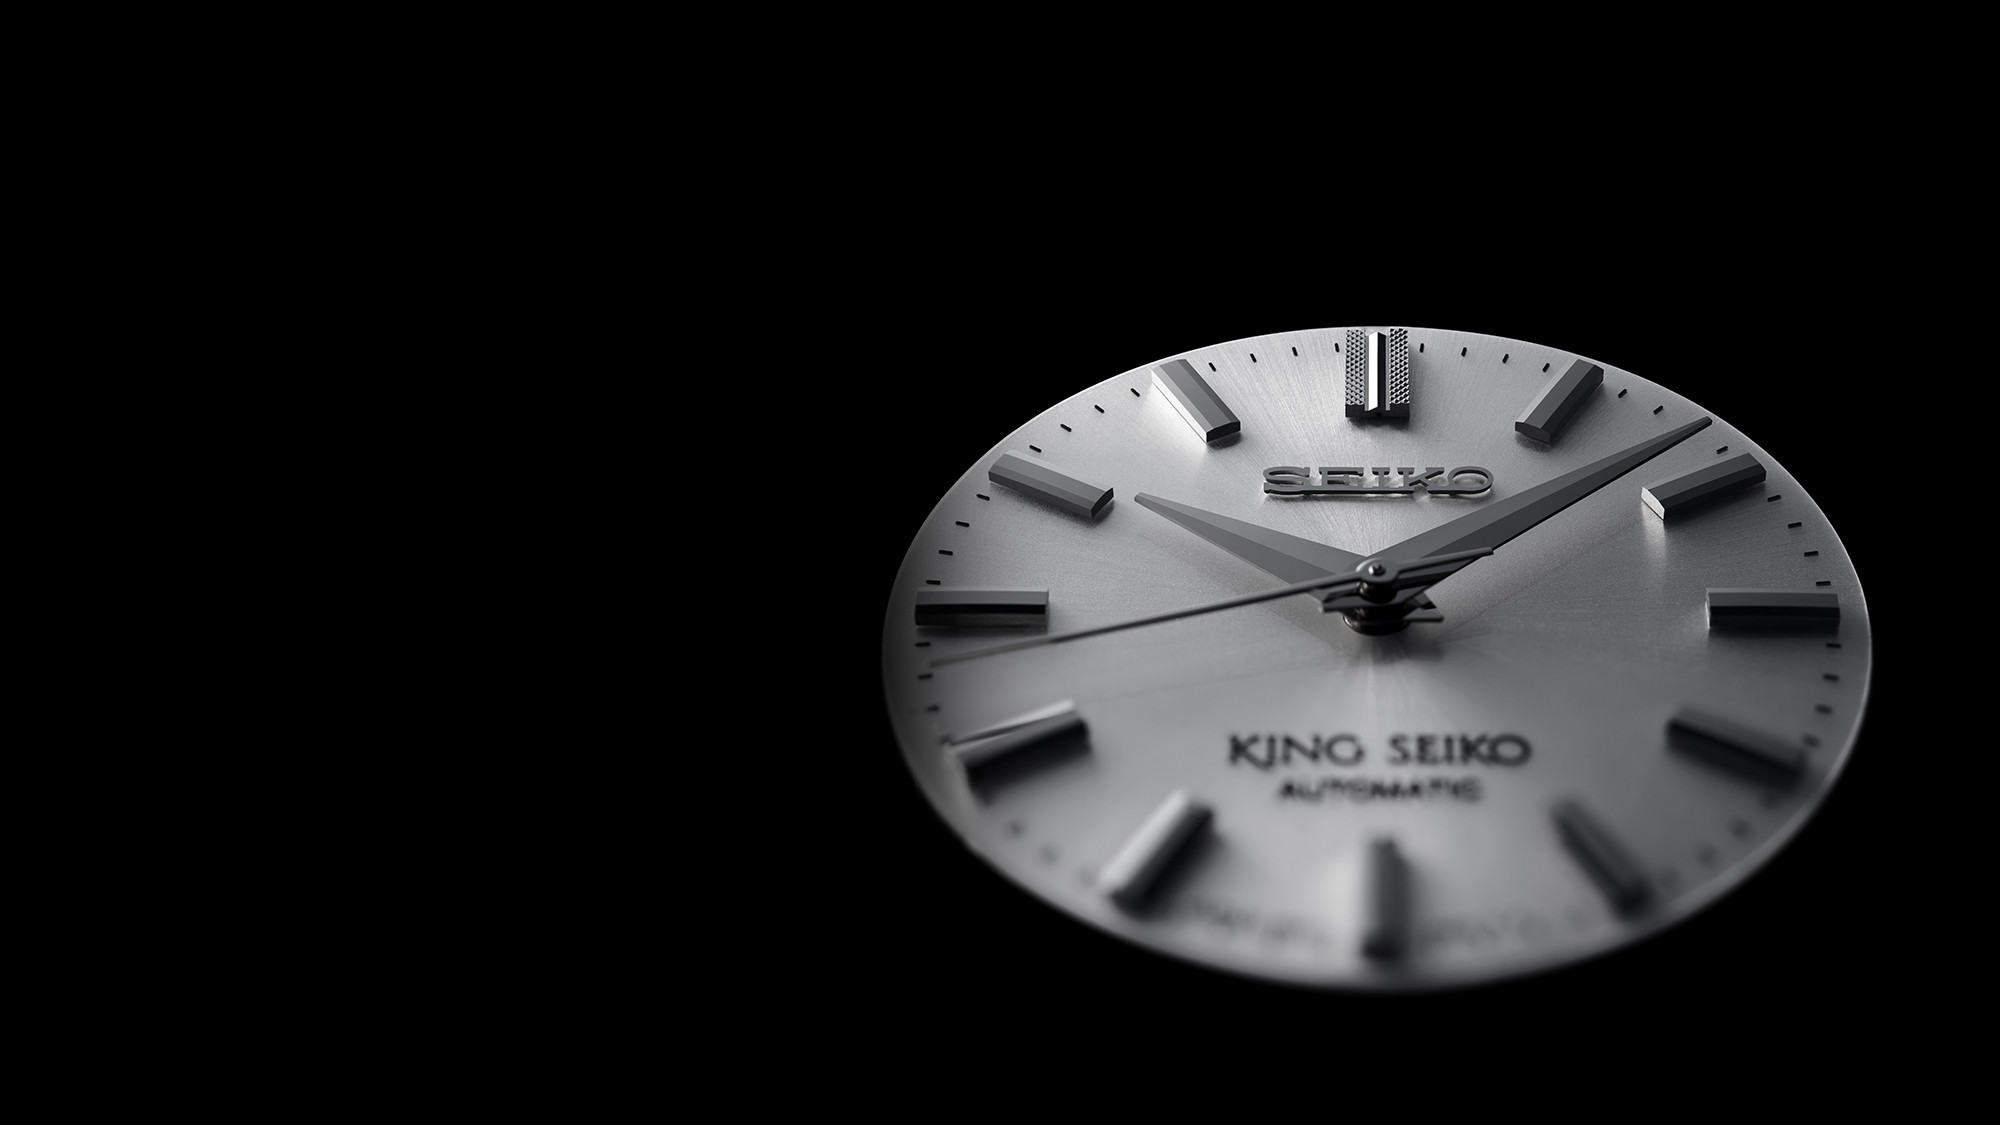 Fotografia em perspectiva da placa metálica do mostrador com os ponteiros e os índices já aplicados de um relógio mecânico King Seiko.